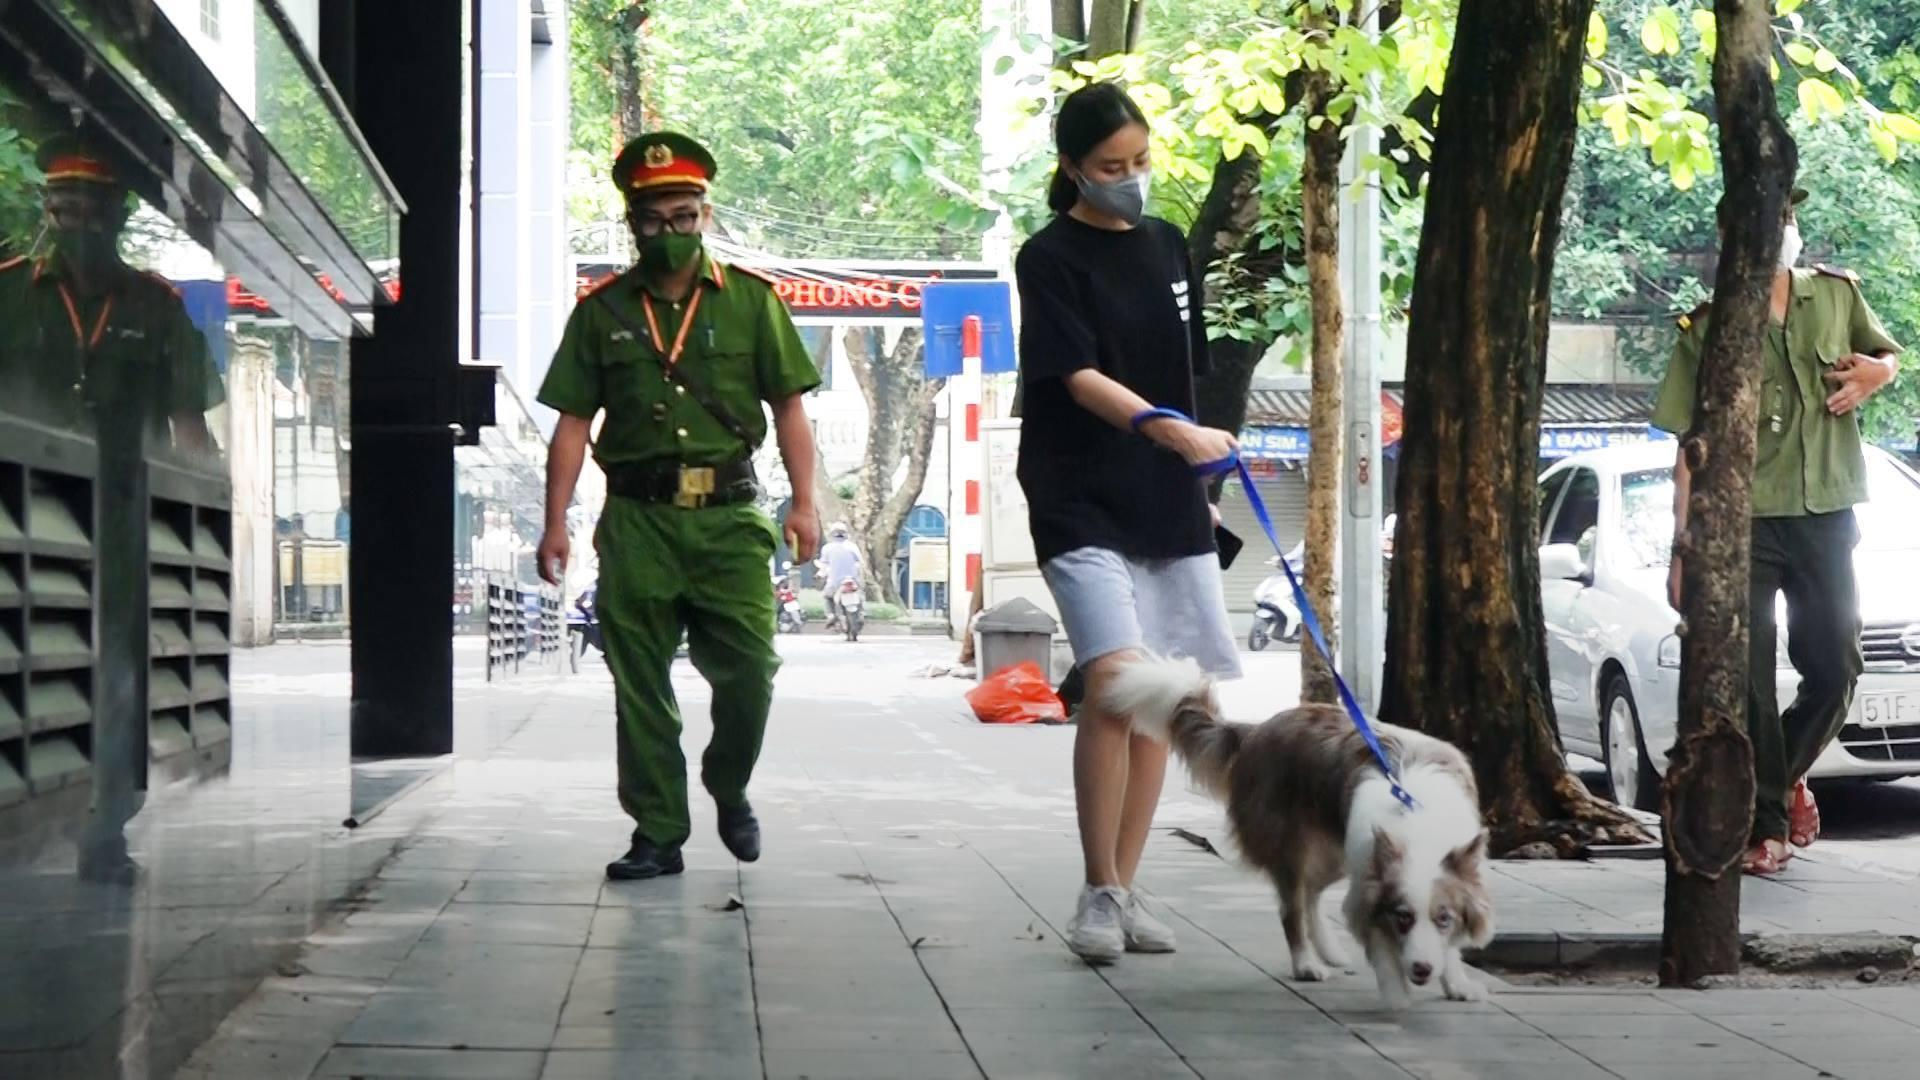 Dắt chó đi dạo khi Hà Hội đang giãn cách, cô gái bị phạt 2 triệu đồng - 1